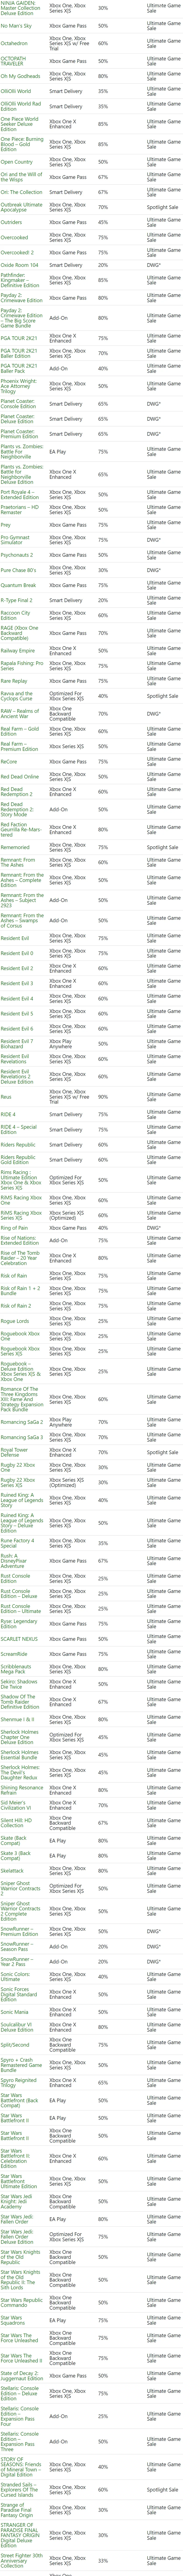 7 月 26 日 - 8 月 1 日 Xbox 金會員遊戲促銷陣容公佈